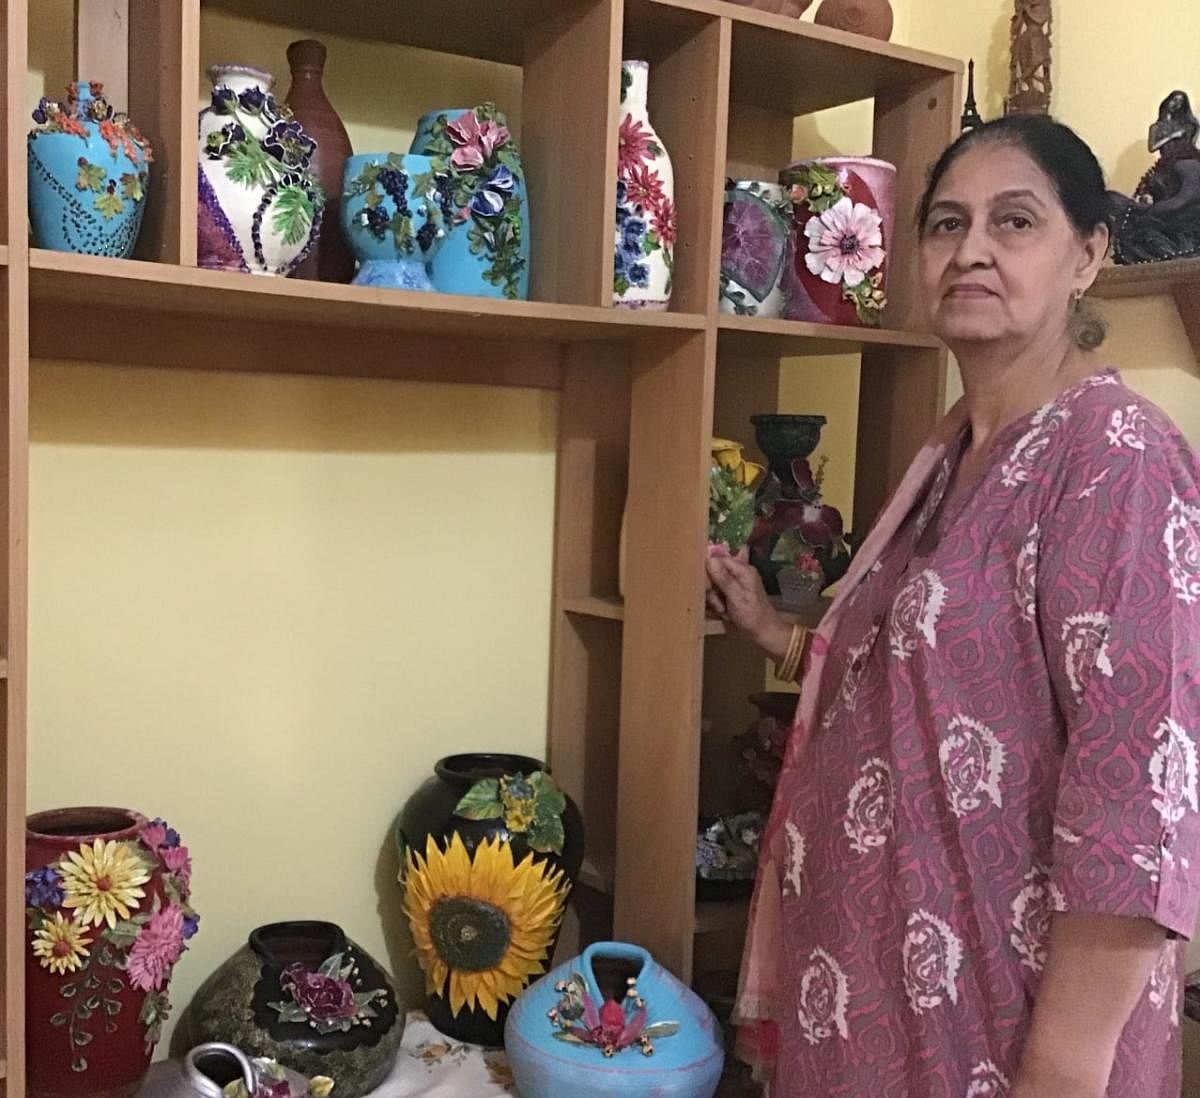 Hobby artist makes ceramic flower art